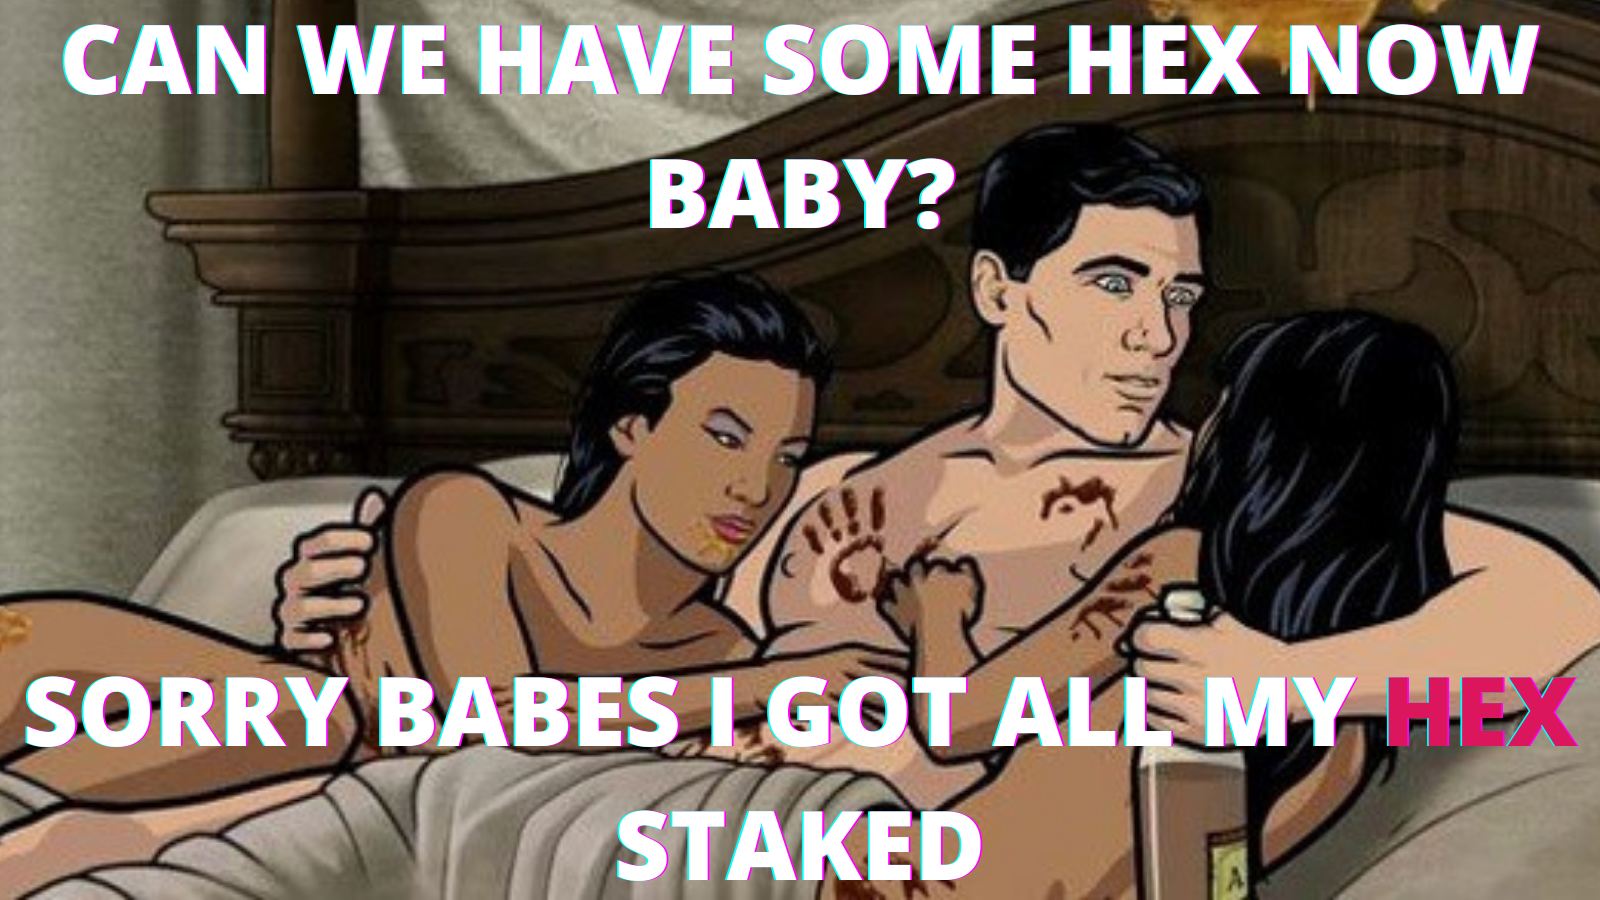 Dobil sem svoj HEX Staked – #HEX #Memes